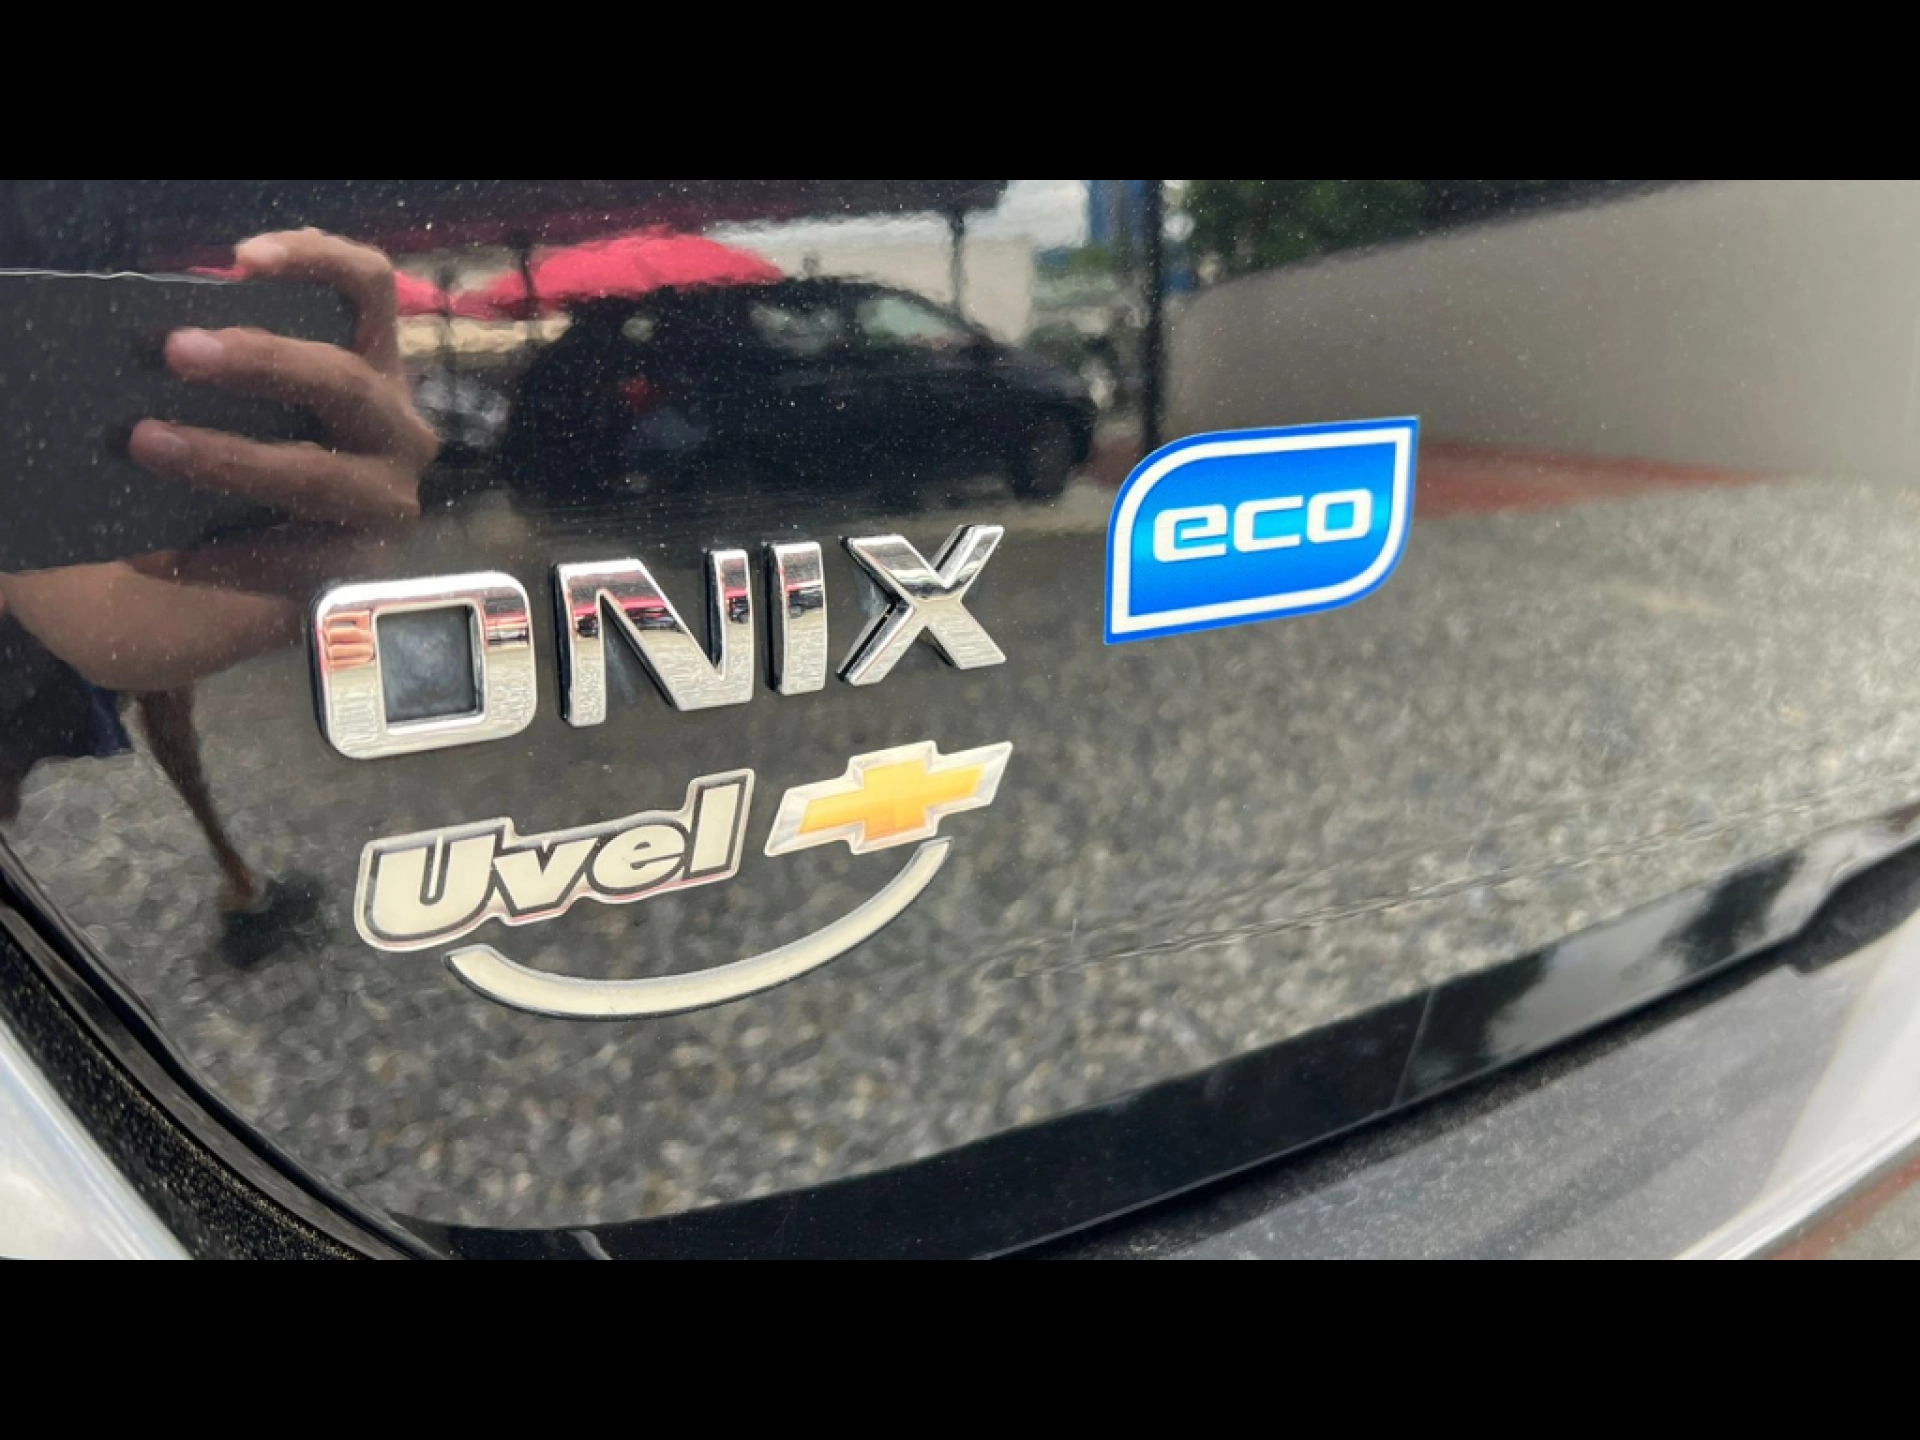 Chevrolet Onix 1.0 2018